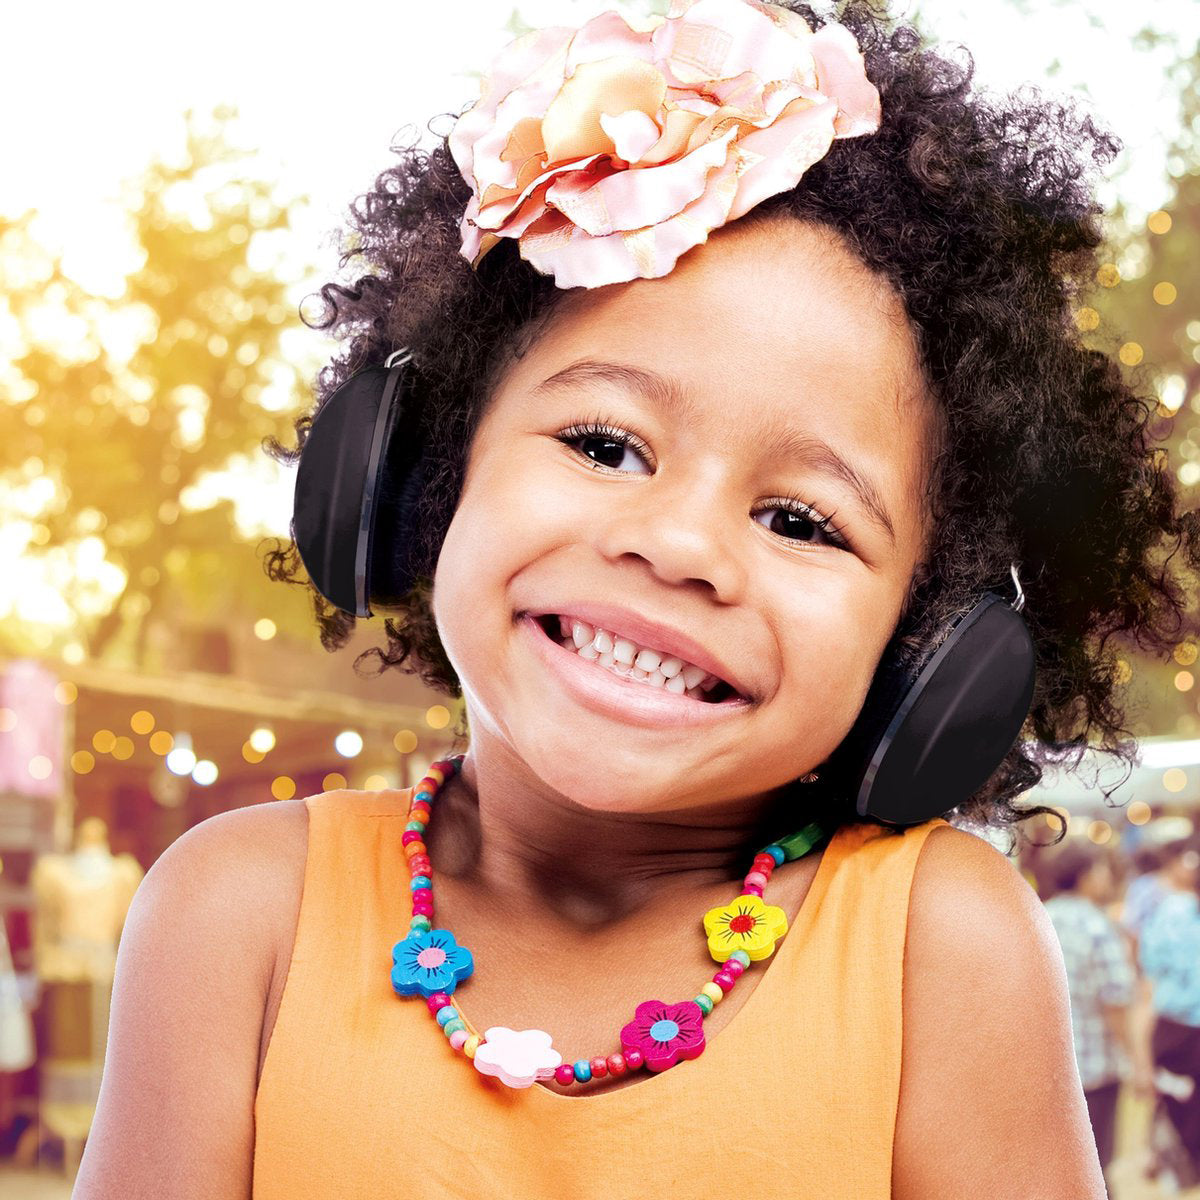 Bescherm het gehoor van je kleintje met Alecto oorbeschermers baby zwart. Het gehoor van een kind is nog volop in ontwikkeling en daardoor natuurlijk minder goed bestand tegen hard geluid. VanZus